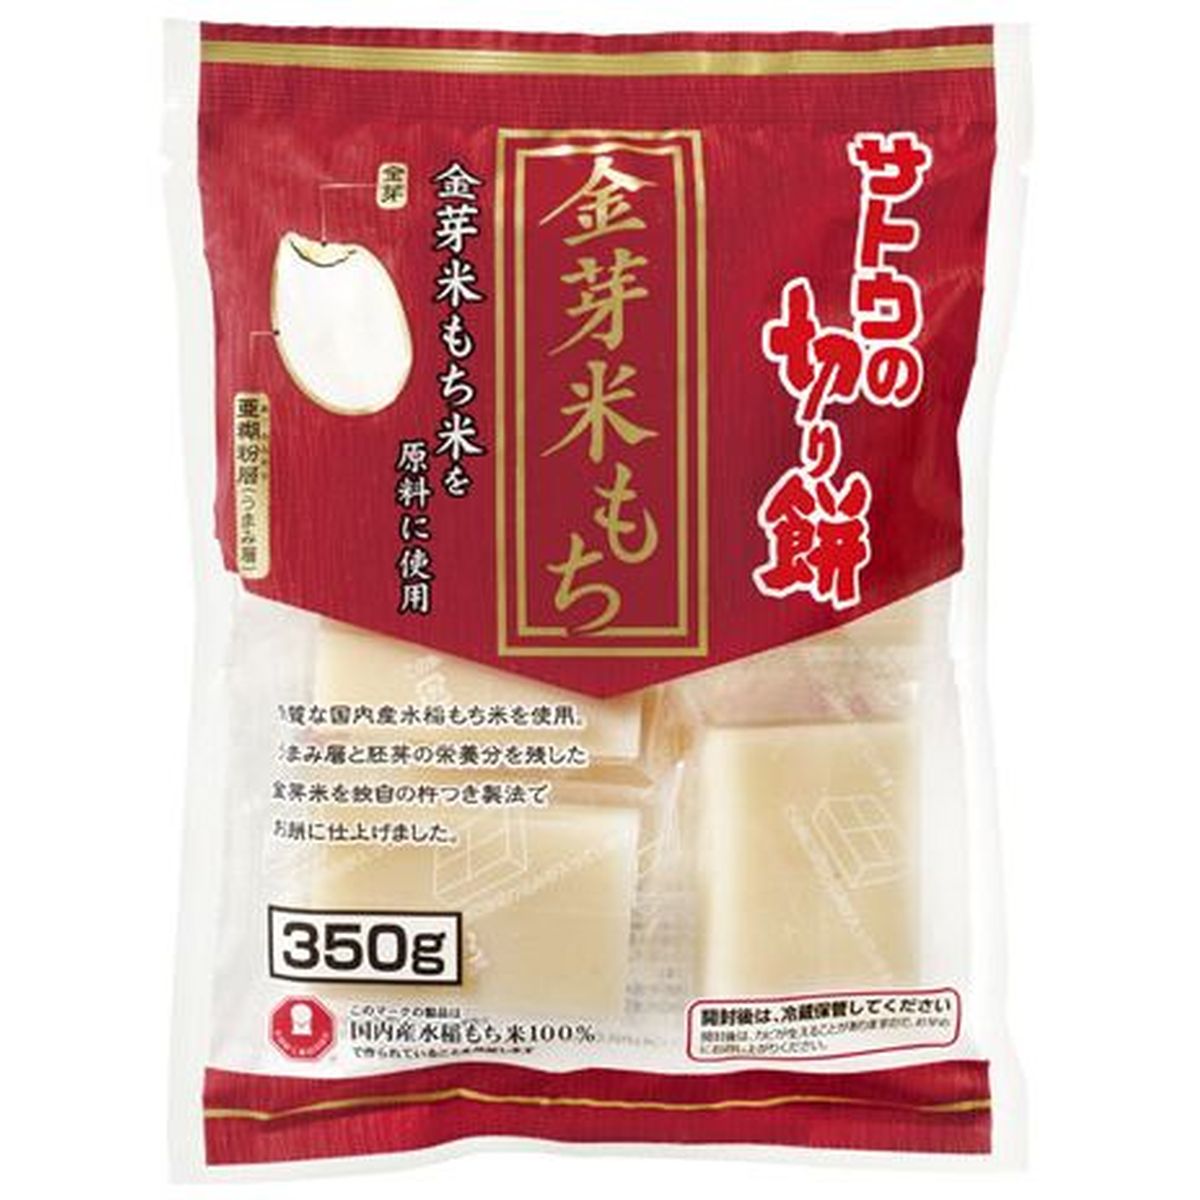 【商品の説明】栄養価が高く、より旨みのある「金芽米」を原料として使用しました。賞味期限：24ヶ月和菓子